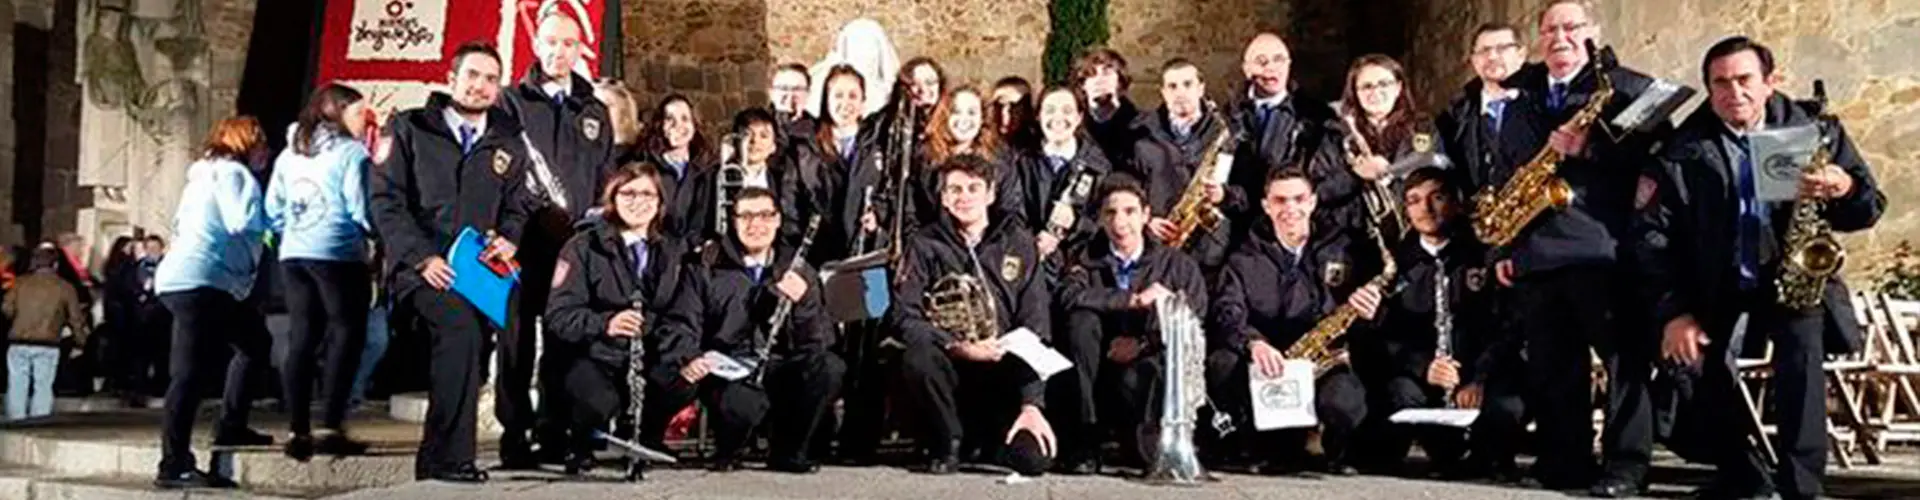 La Banda de Música de Ávila presenta su nuevo programa